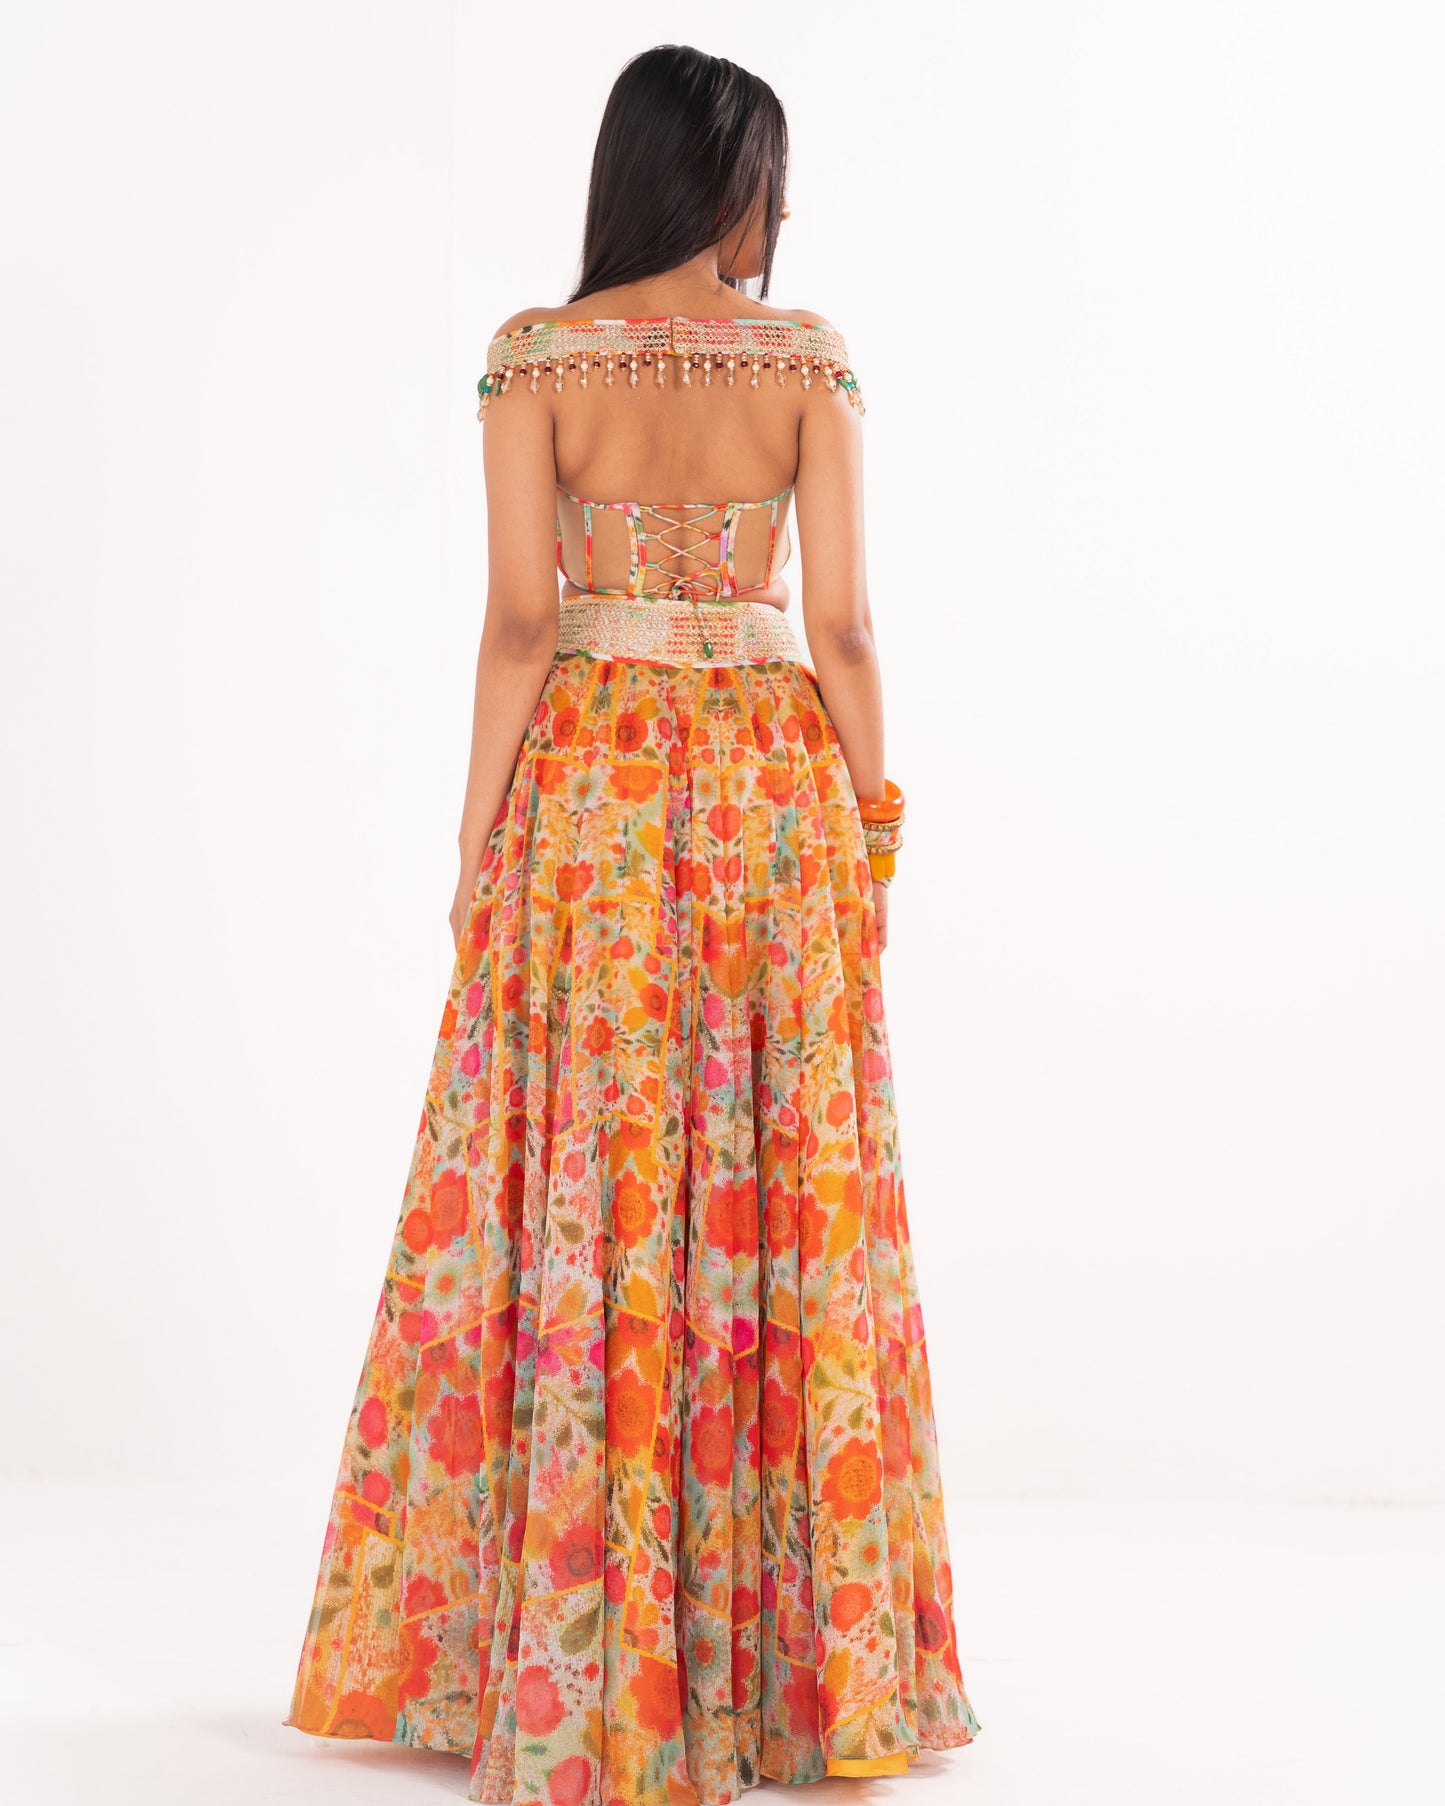 Floral impressions print skirt set